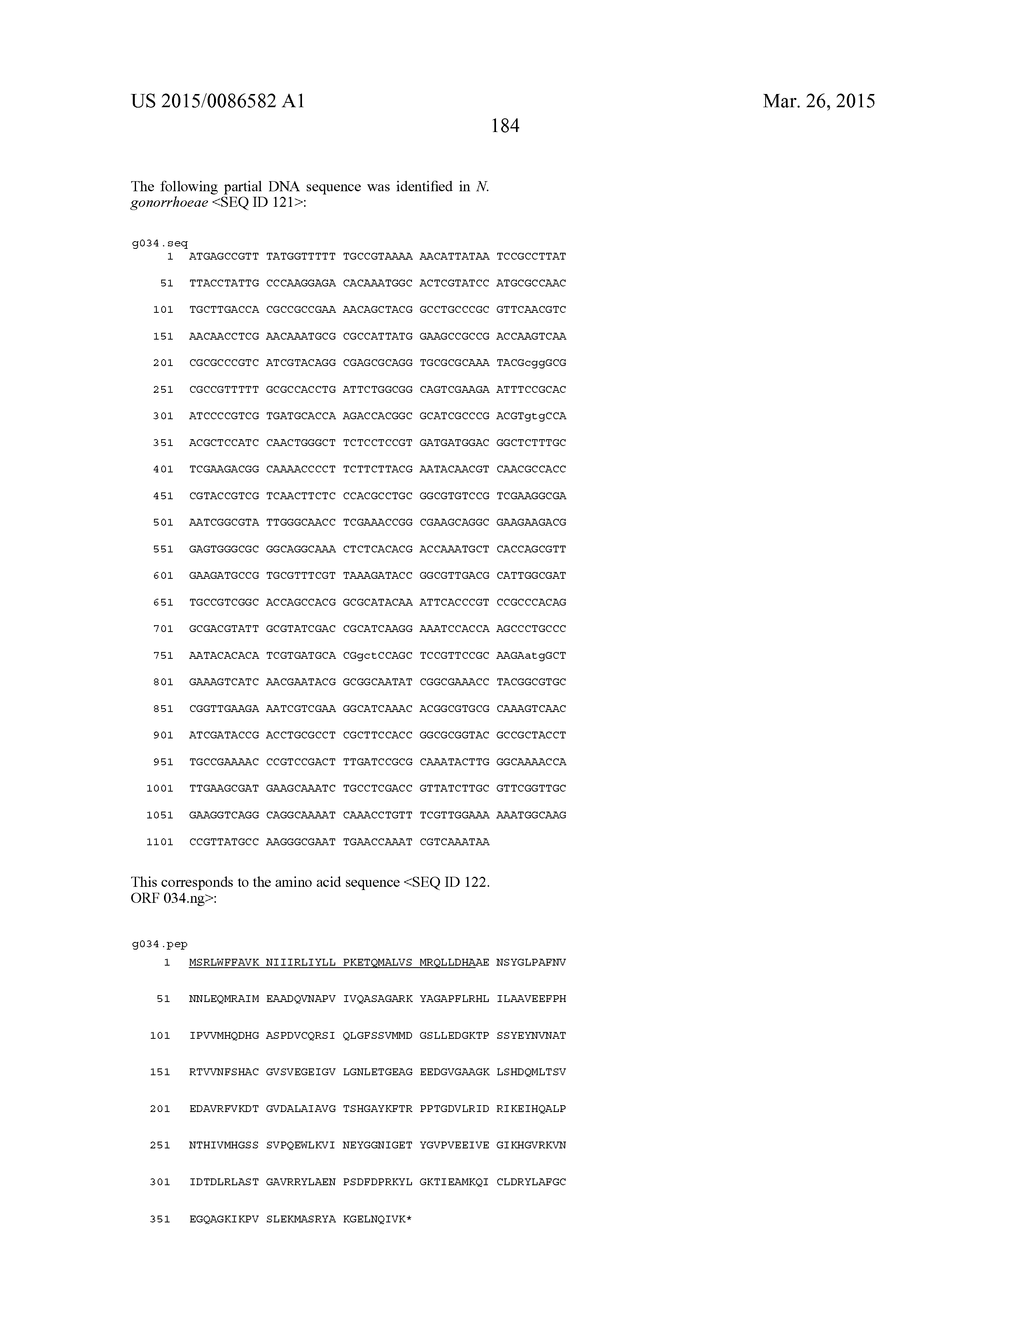 NEISSERIA MENINGITIDIS ANTIGENS AND COMPOSITIONS - diagram, schematic, and image 216